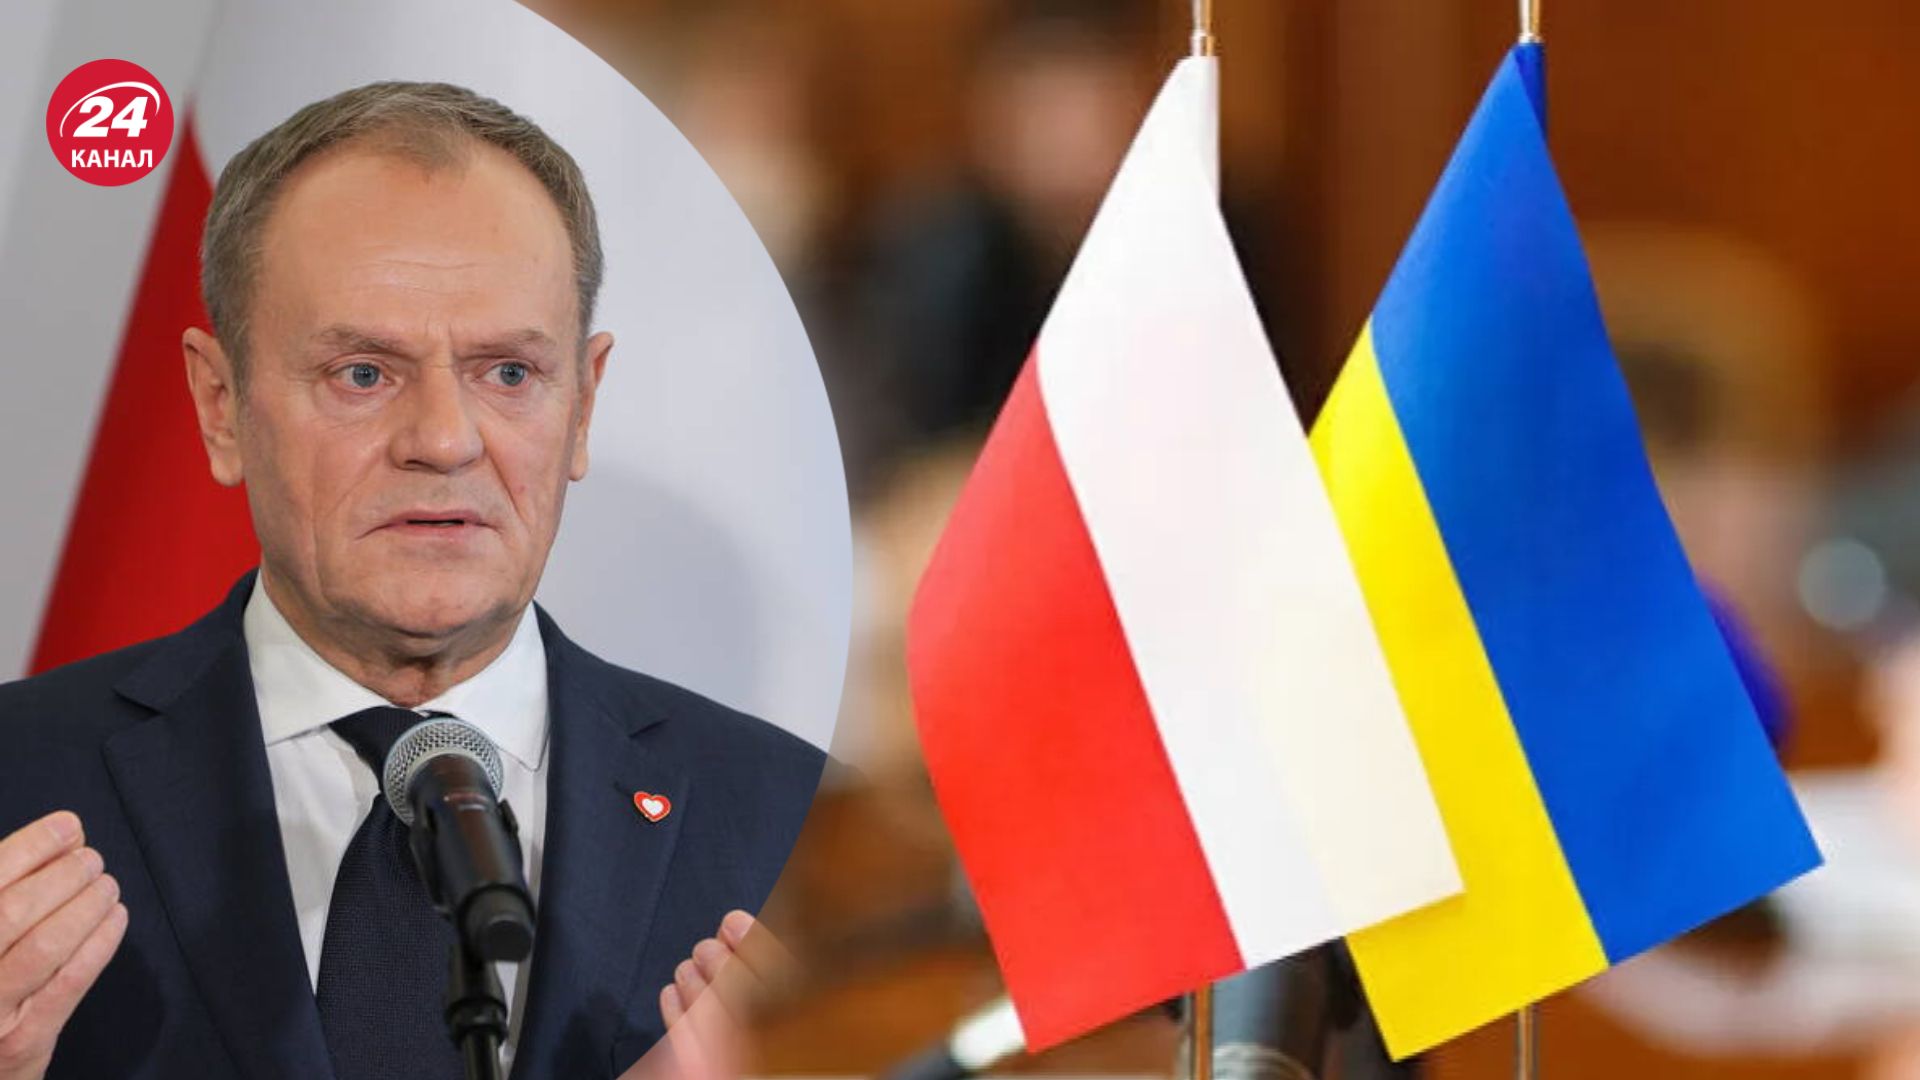 Туск прокомментировал возможную ссору между Украиной и Польшей